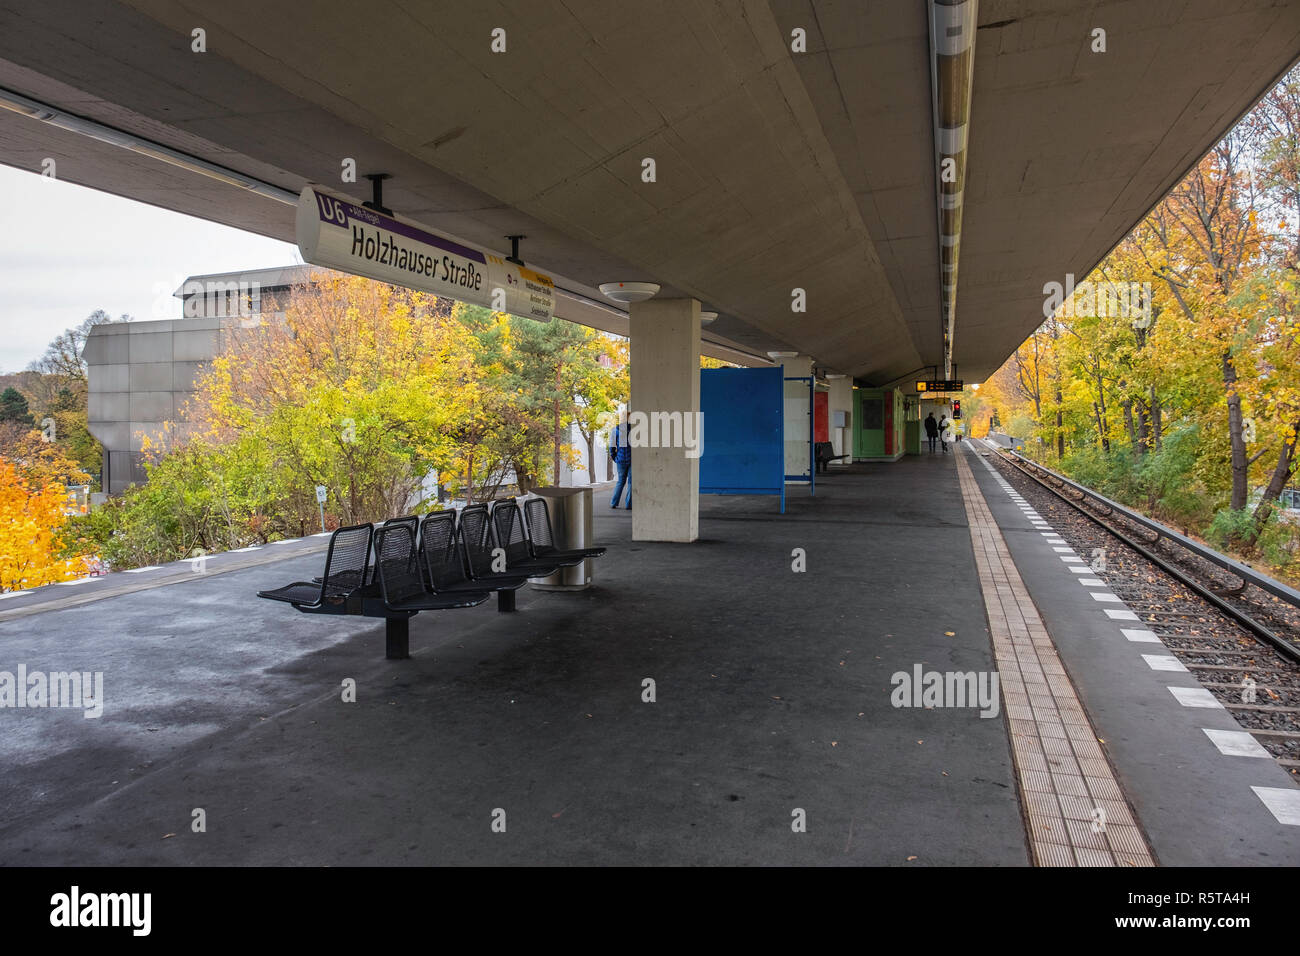 Berlin Reinickendorf, Holzhauser Starsse,U-bahn.de la gare, coin de la plate-forme jaune et feuillage d'automne Banque D'Images